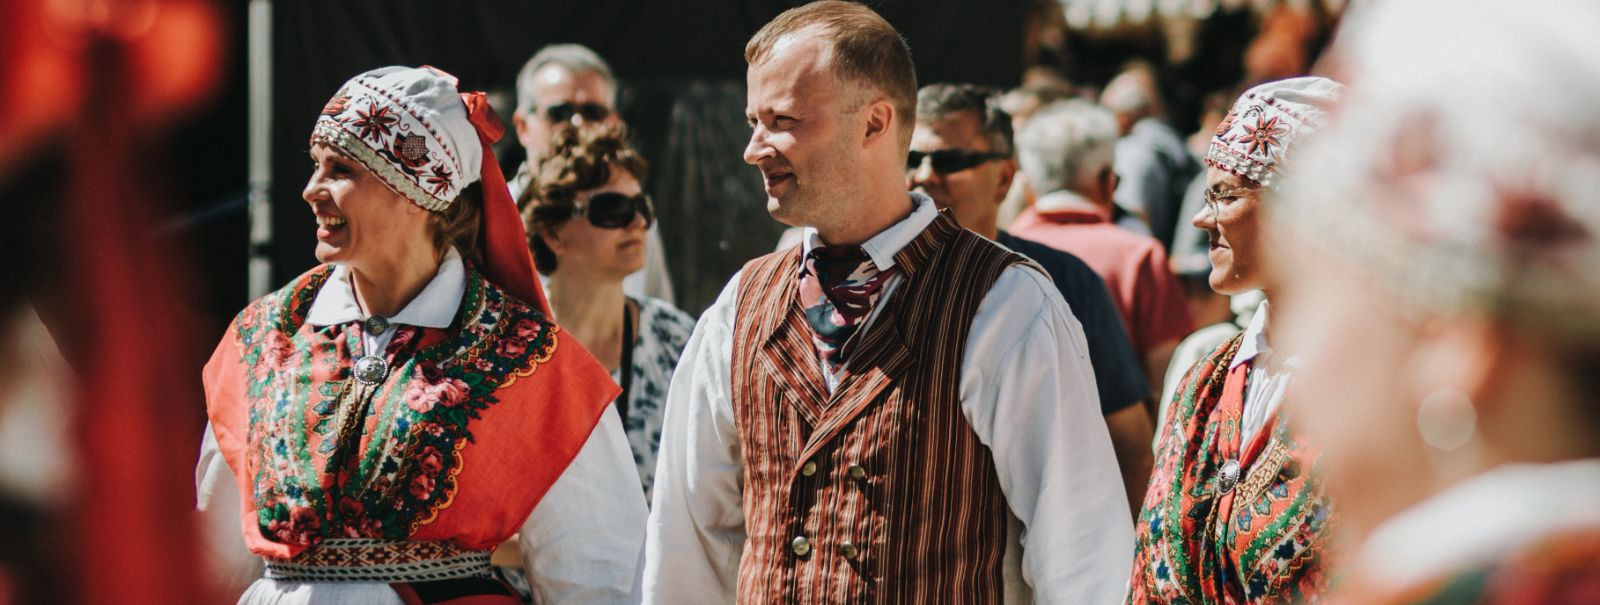 Eesti on maa, mille rikkalik kultuuripärand on aastasadu inspireerinud nii kohalikke elanikke kui ka külastajaid üle kogu maailma. Üks oluline osa sellest päran